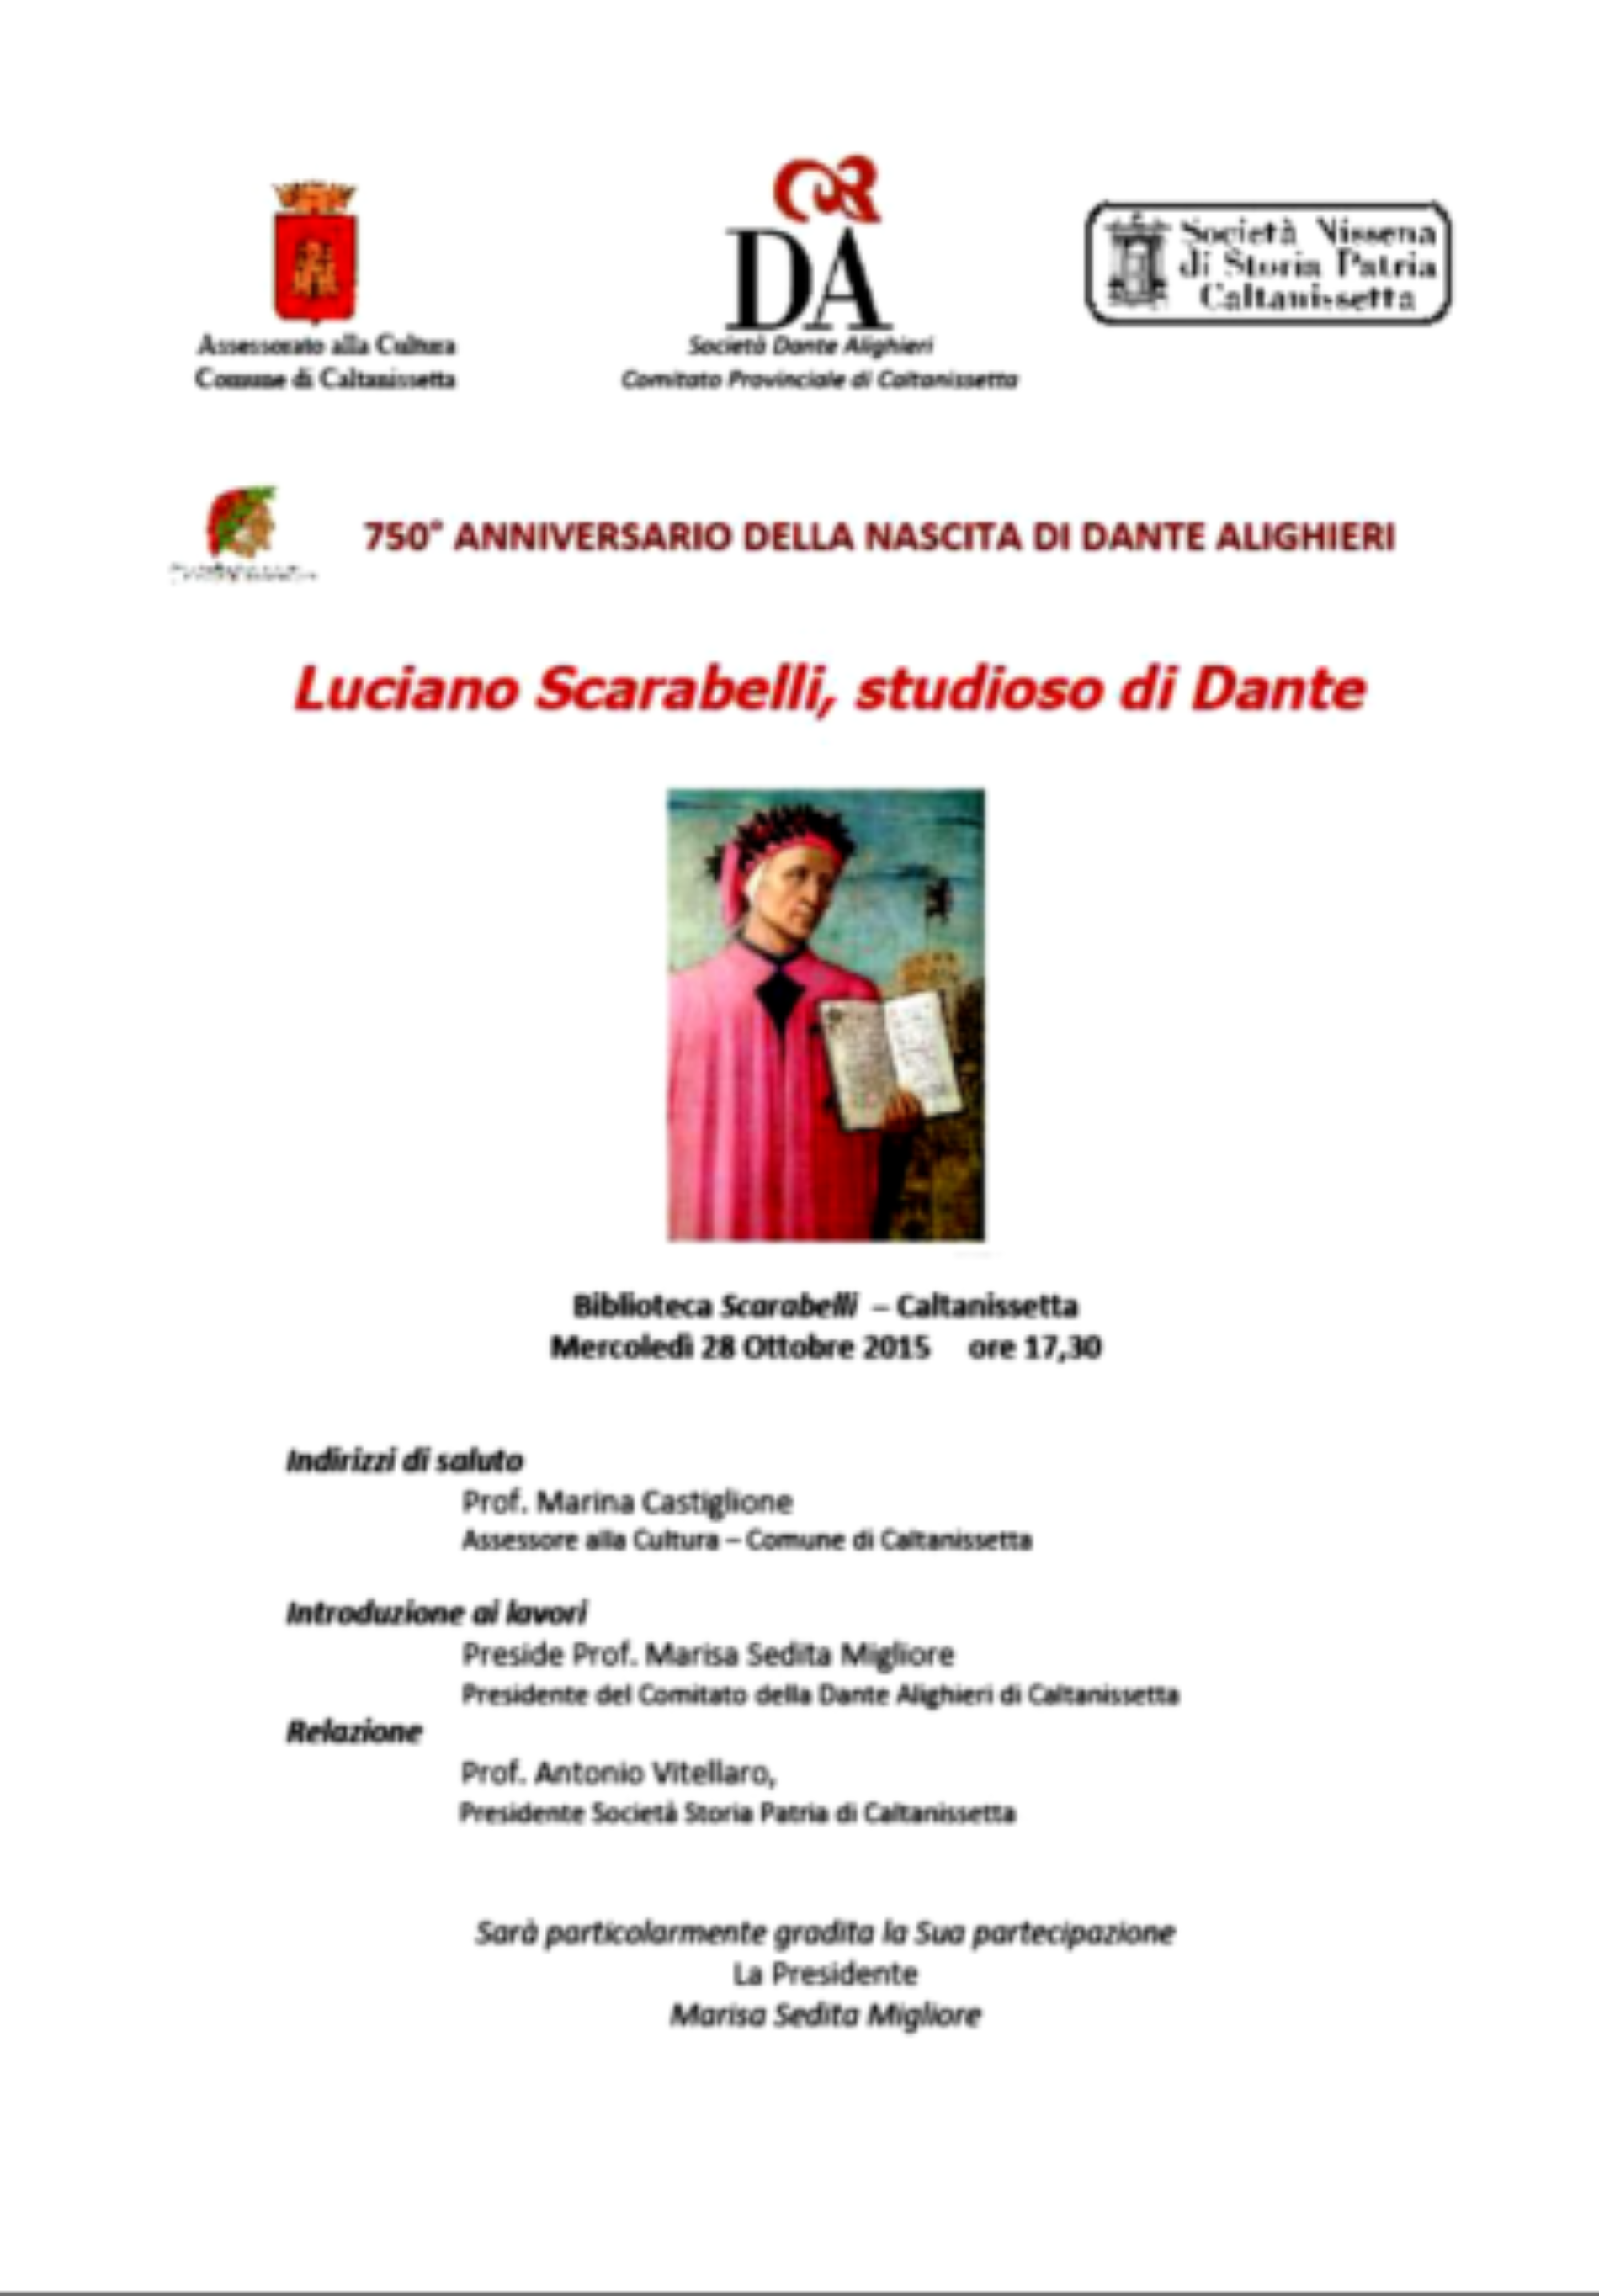 Incontro a Caltanissetta per i 750 anni dalla nascita di Dante dal titolo “Luciano Scarabelli studioso di Dante”